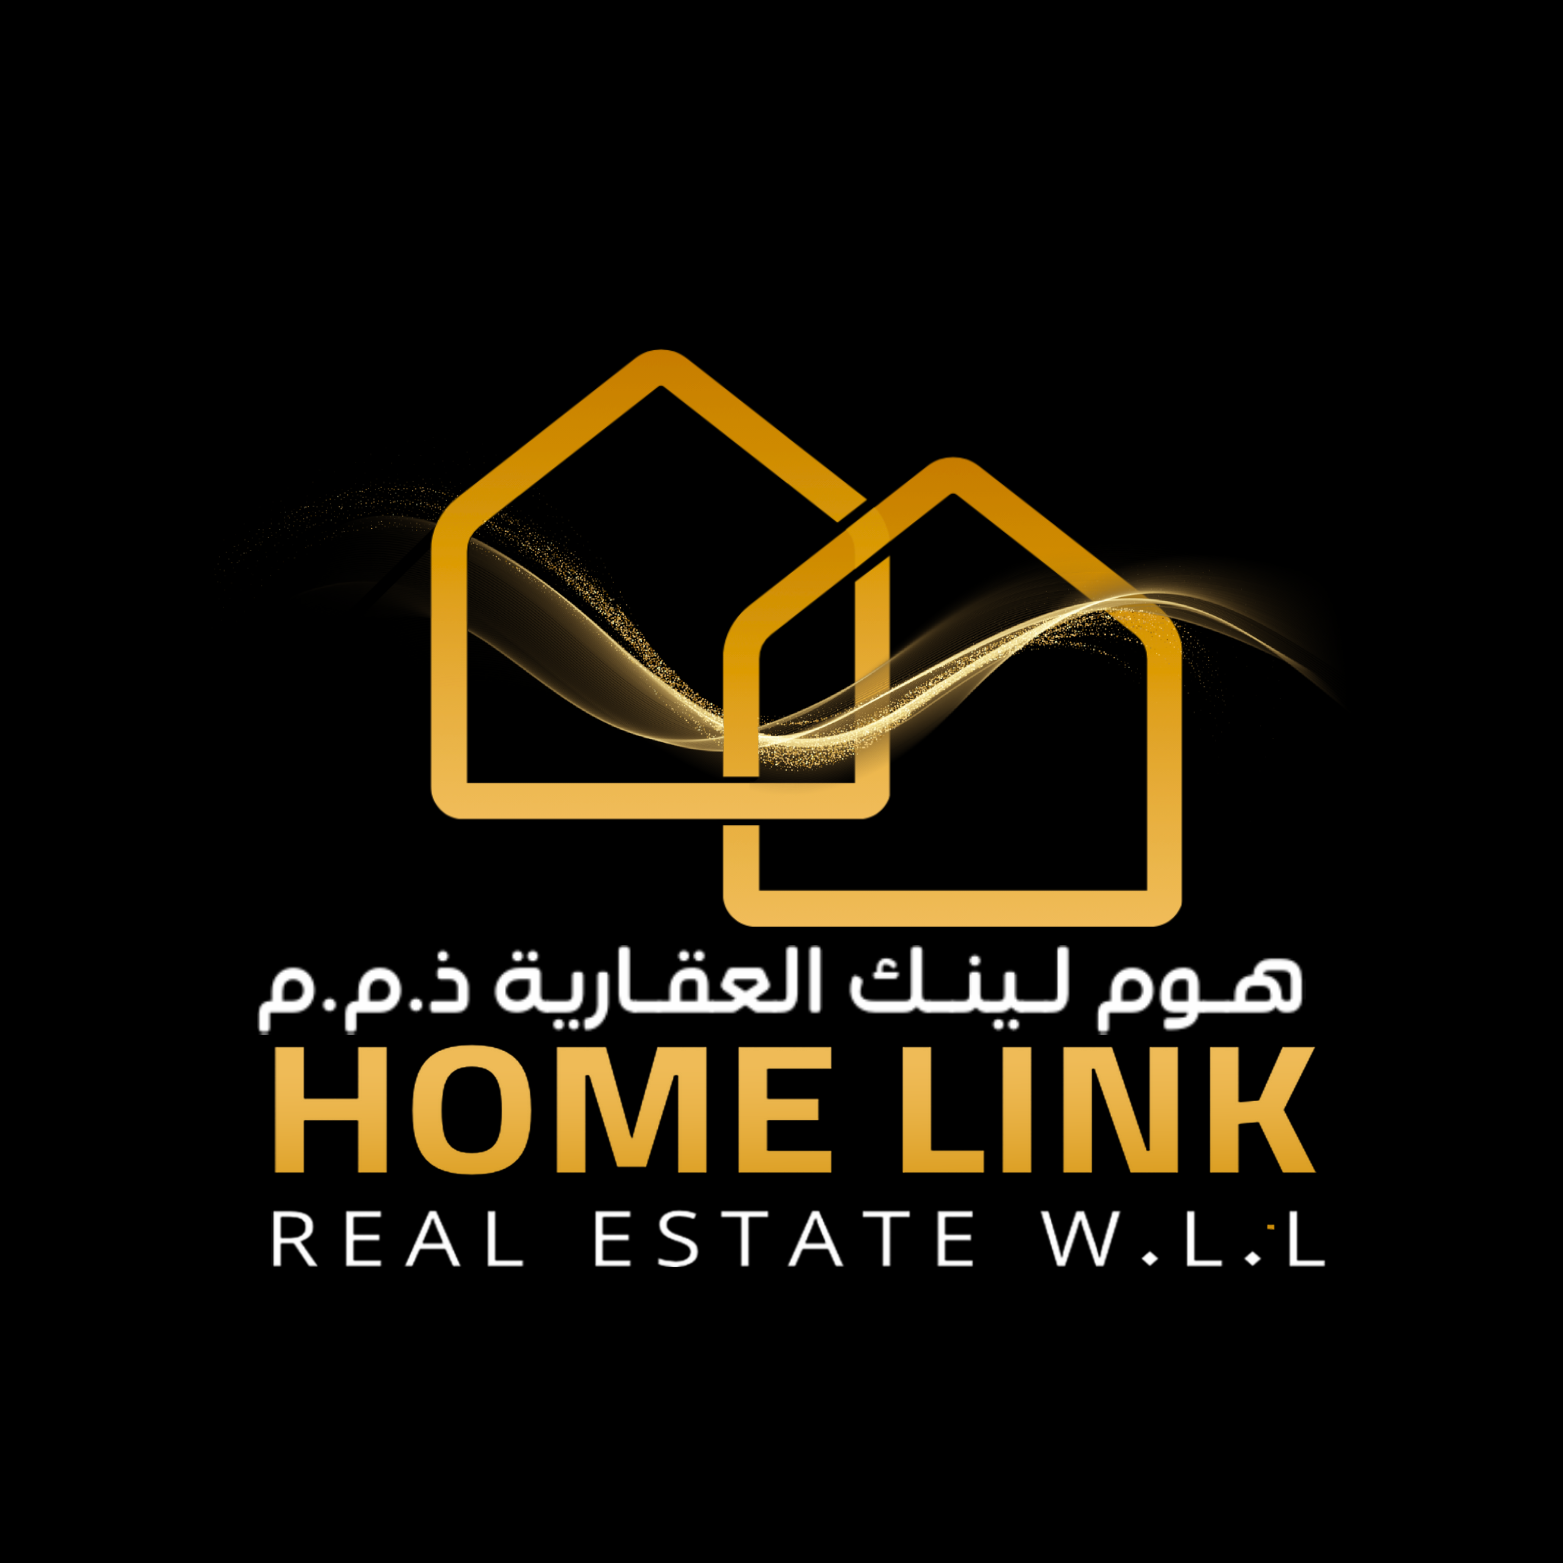 MU Home Link Real Estate W.L.L